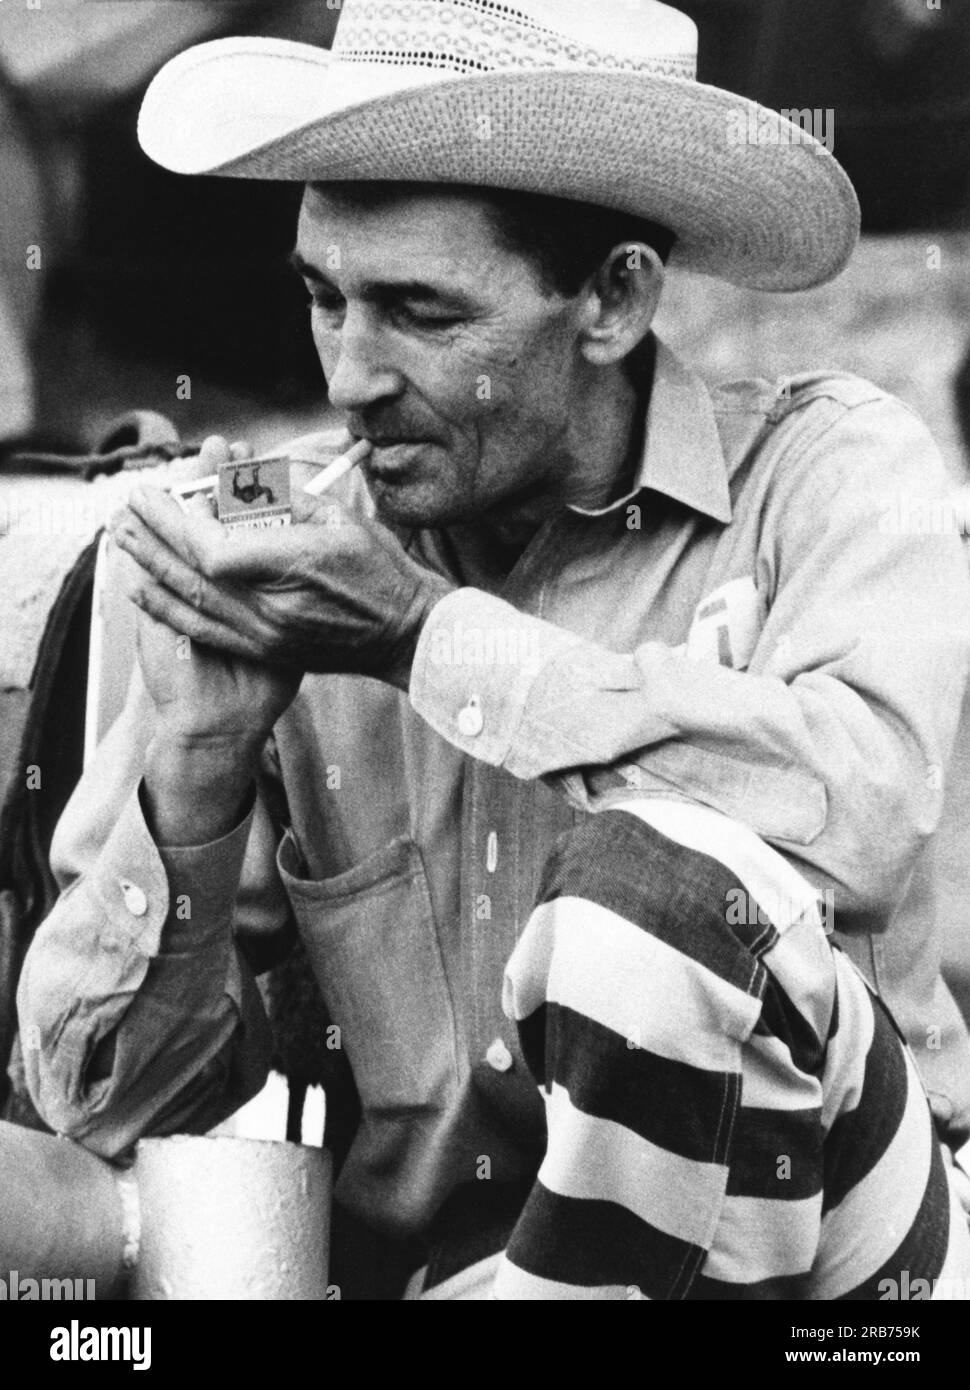 McAlester, Oklahoma: September. 1971 Ein Cowboy-Gefangener beim Gefängnis-Rodeo Zündet eine Kamelzigarette an. Er sagt, er war neun Mal im Gefängnis und wurde beschuldigt, nur wegen des Rodeos zurückgekommen zu sein. Stockfoto